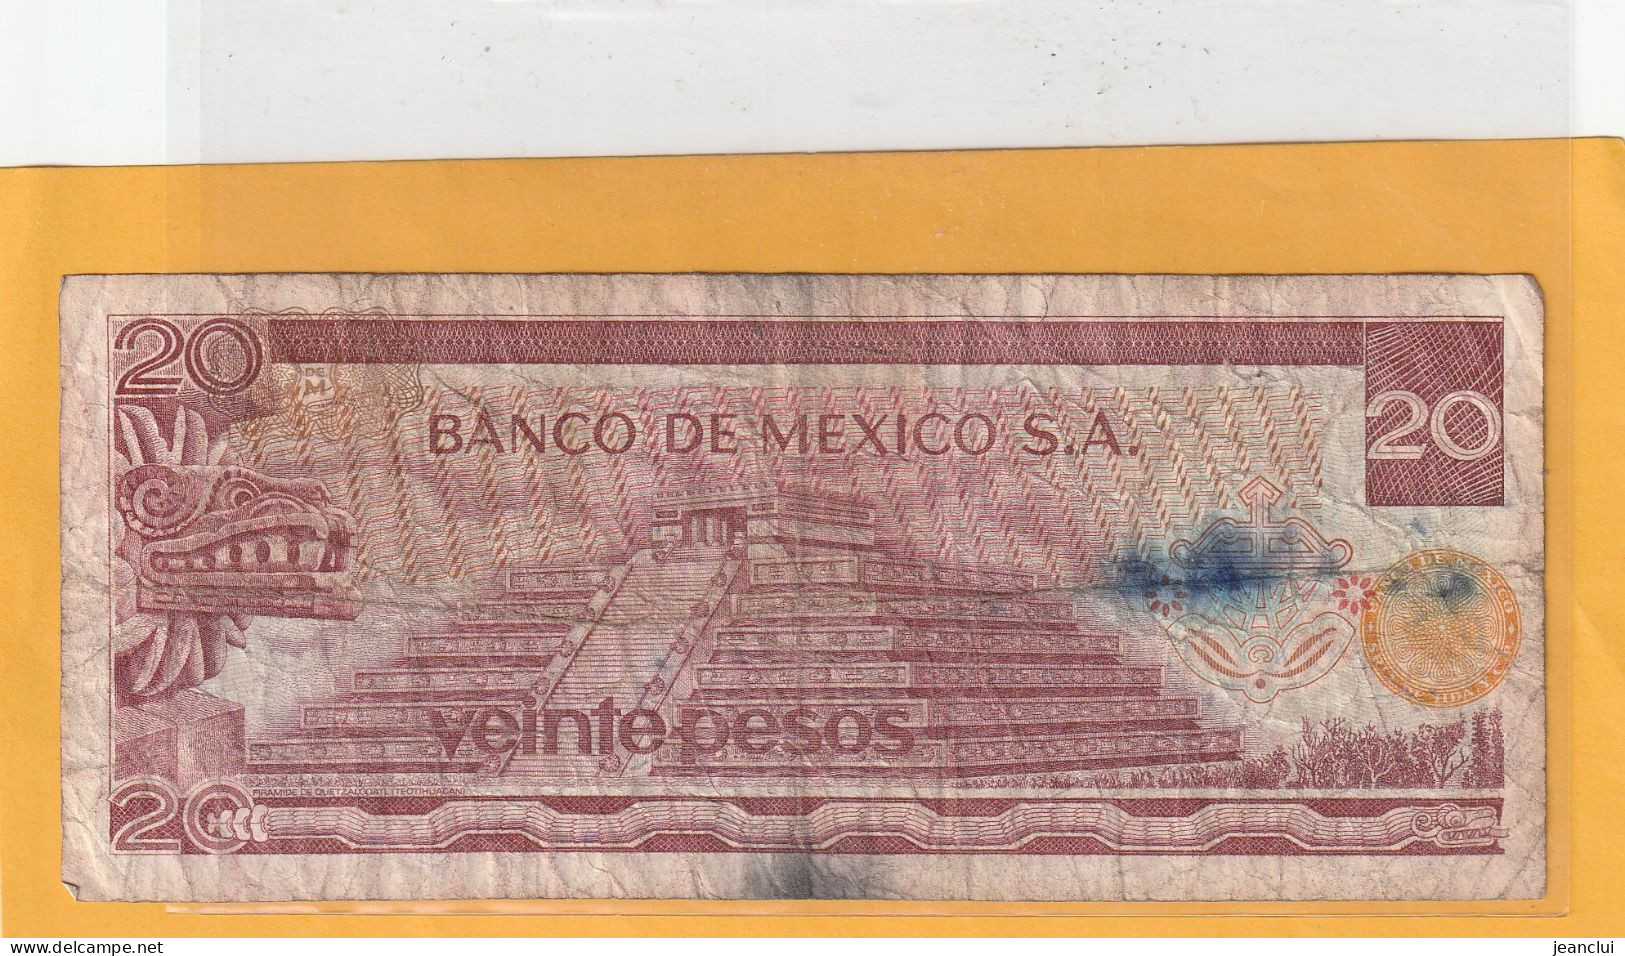 EL BANCO DE MEXICO S.A.   .  20 PESOS  .  18-7-1973  .  N°  M 8107509 .  2 SCANNES  .  BILLET TRES USITE - Mexico